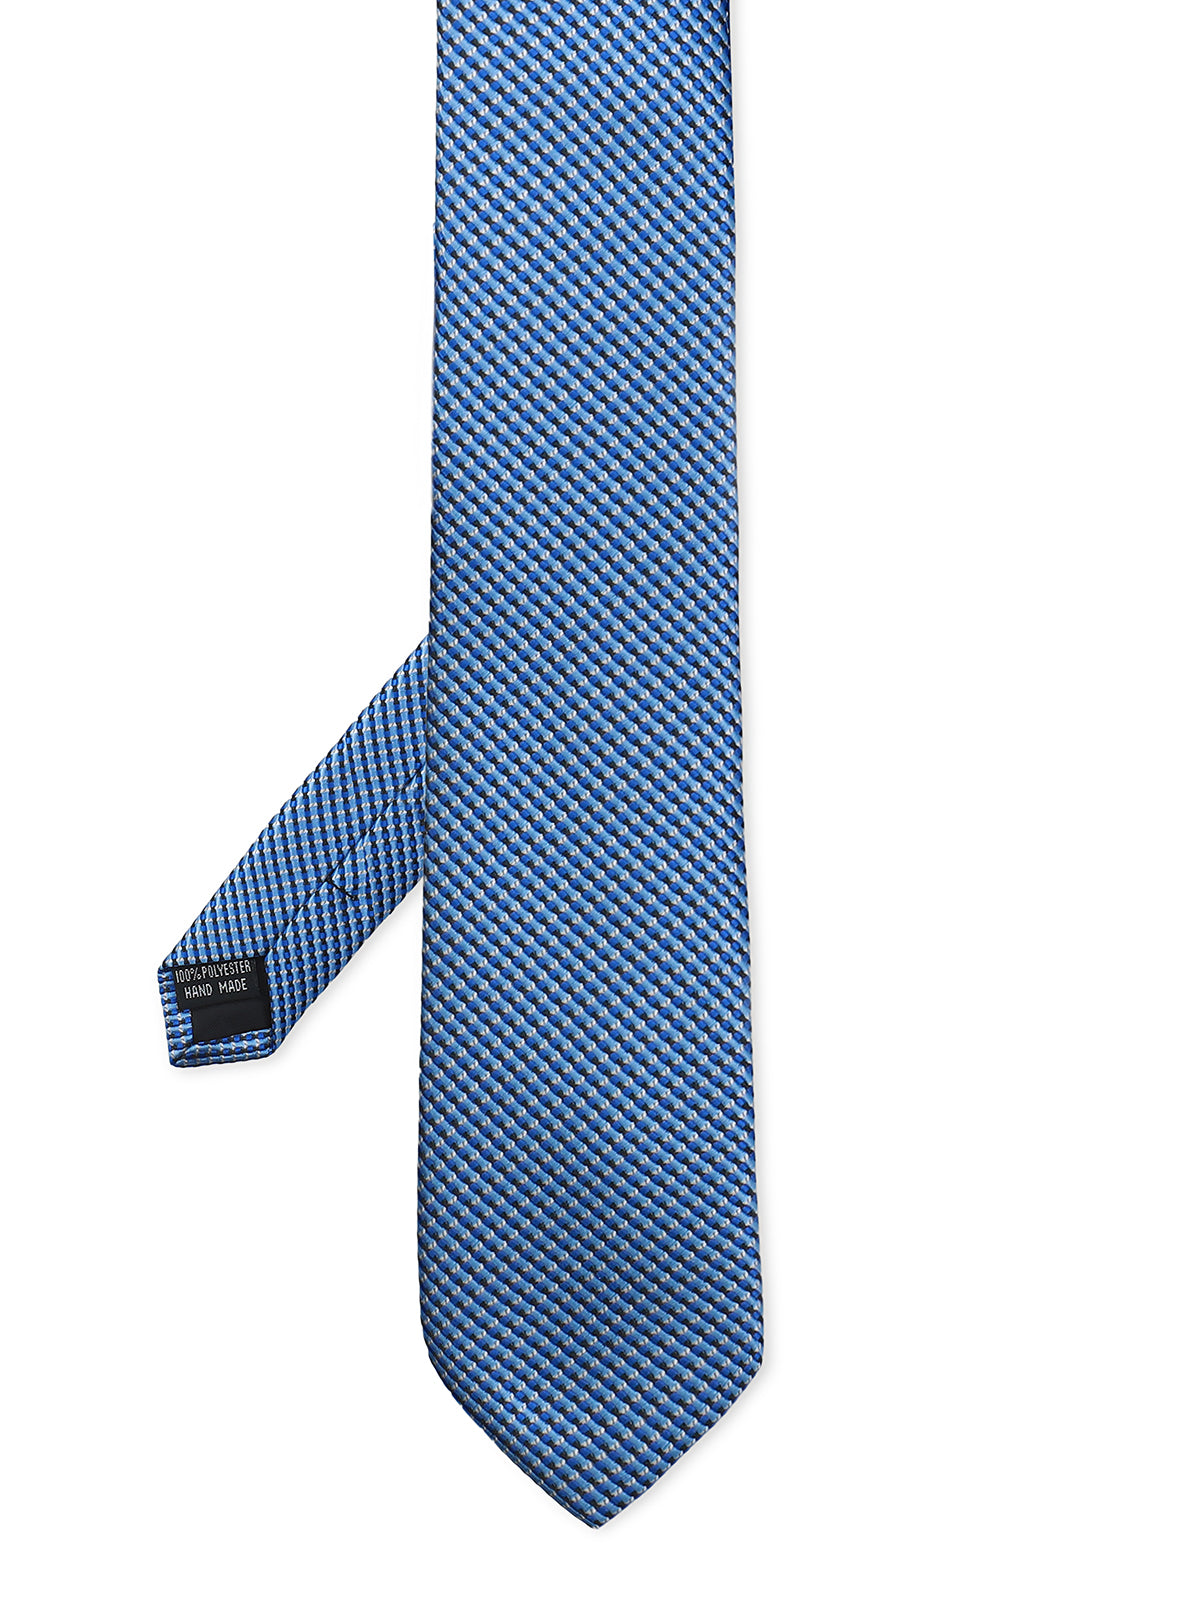 Blue Tie - EAMT24-084